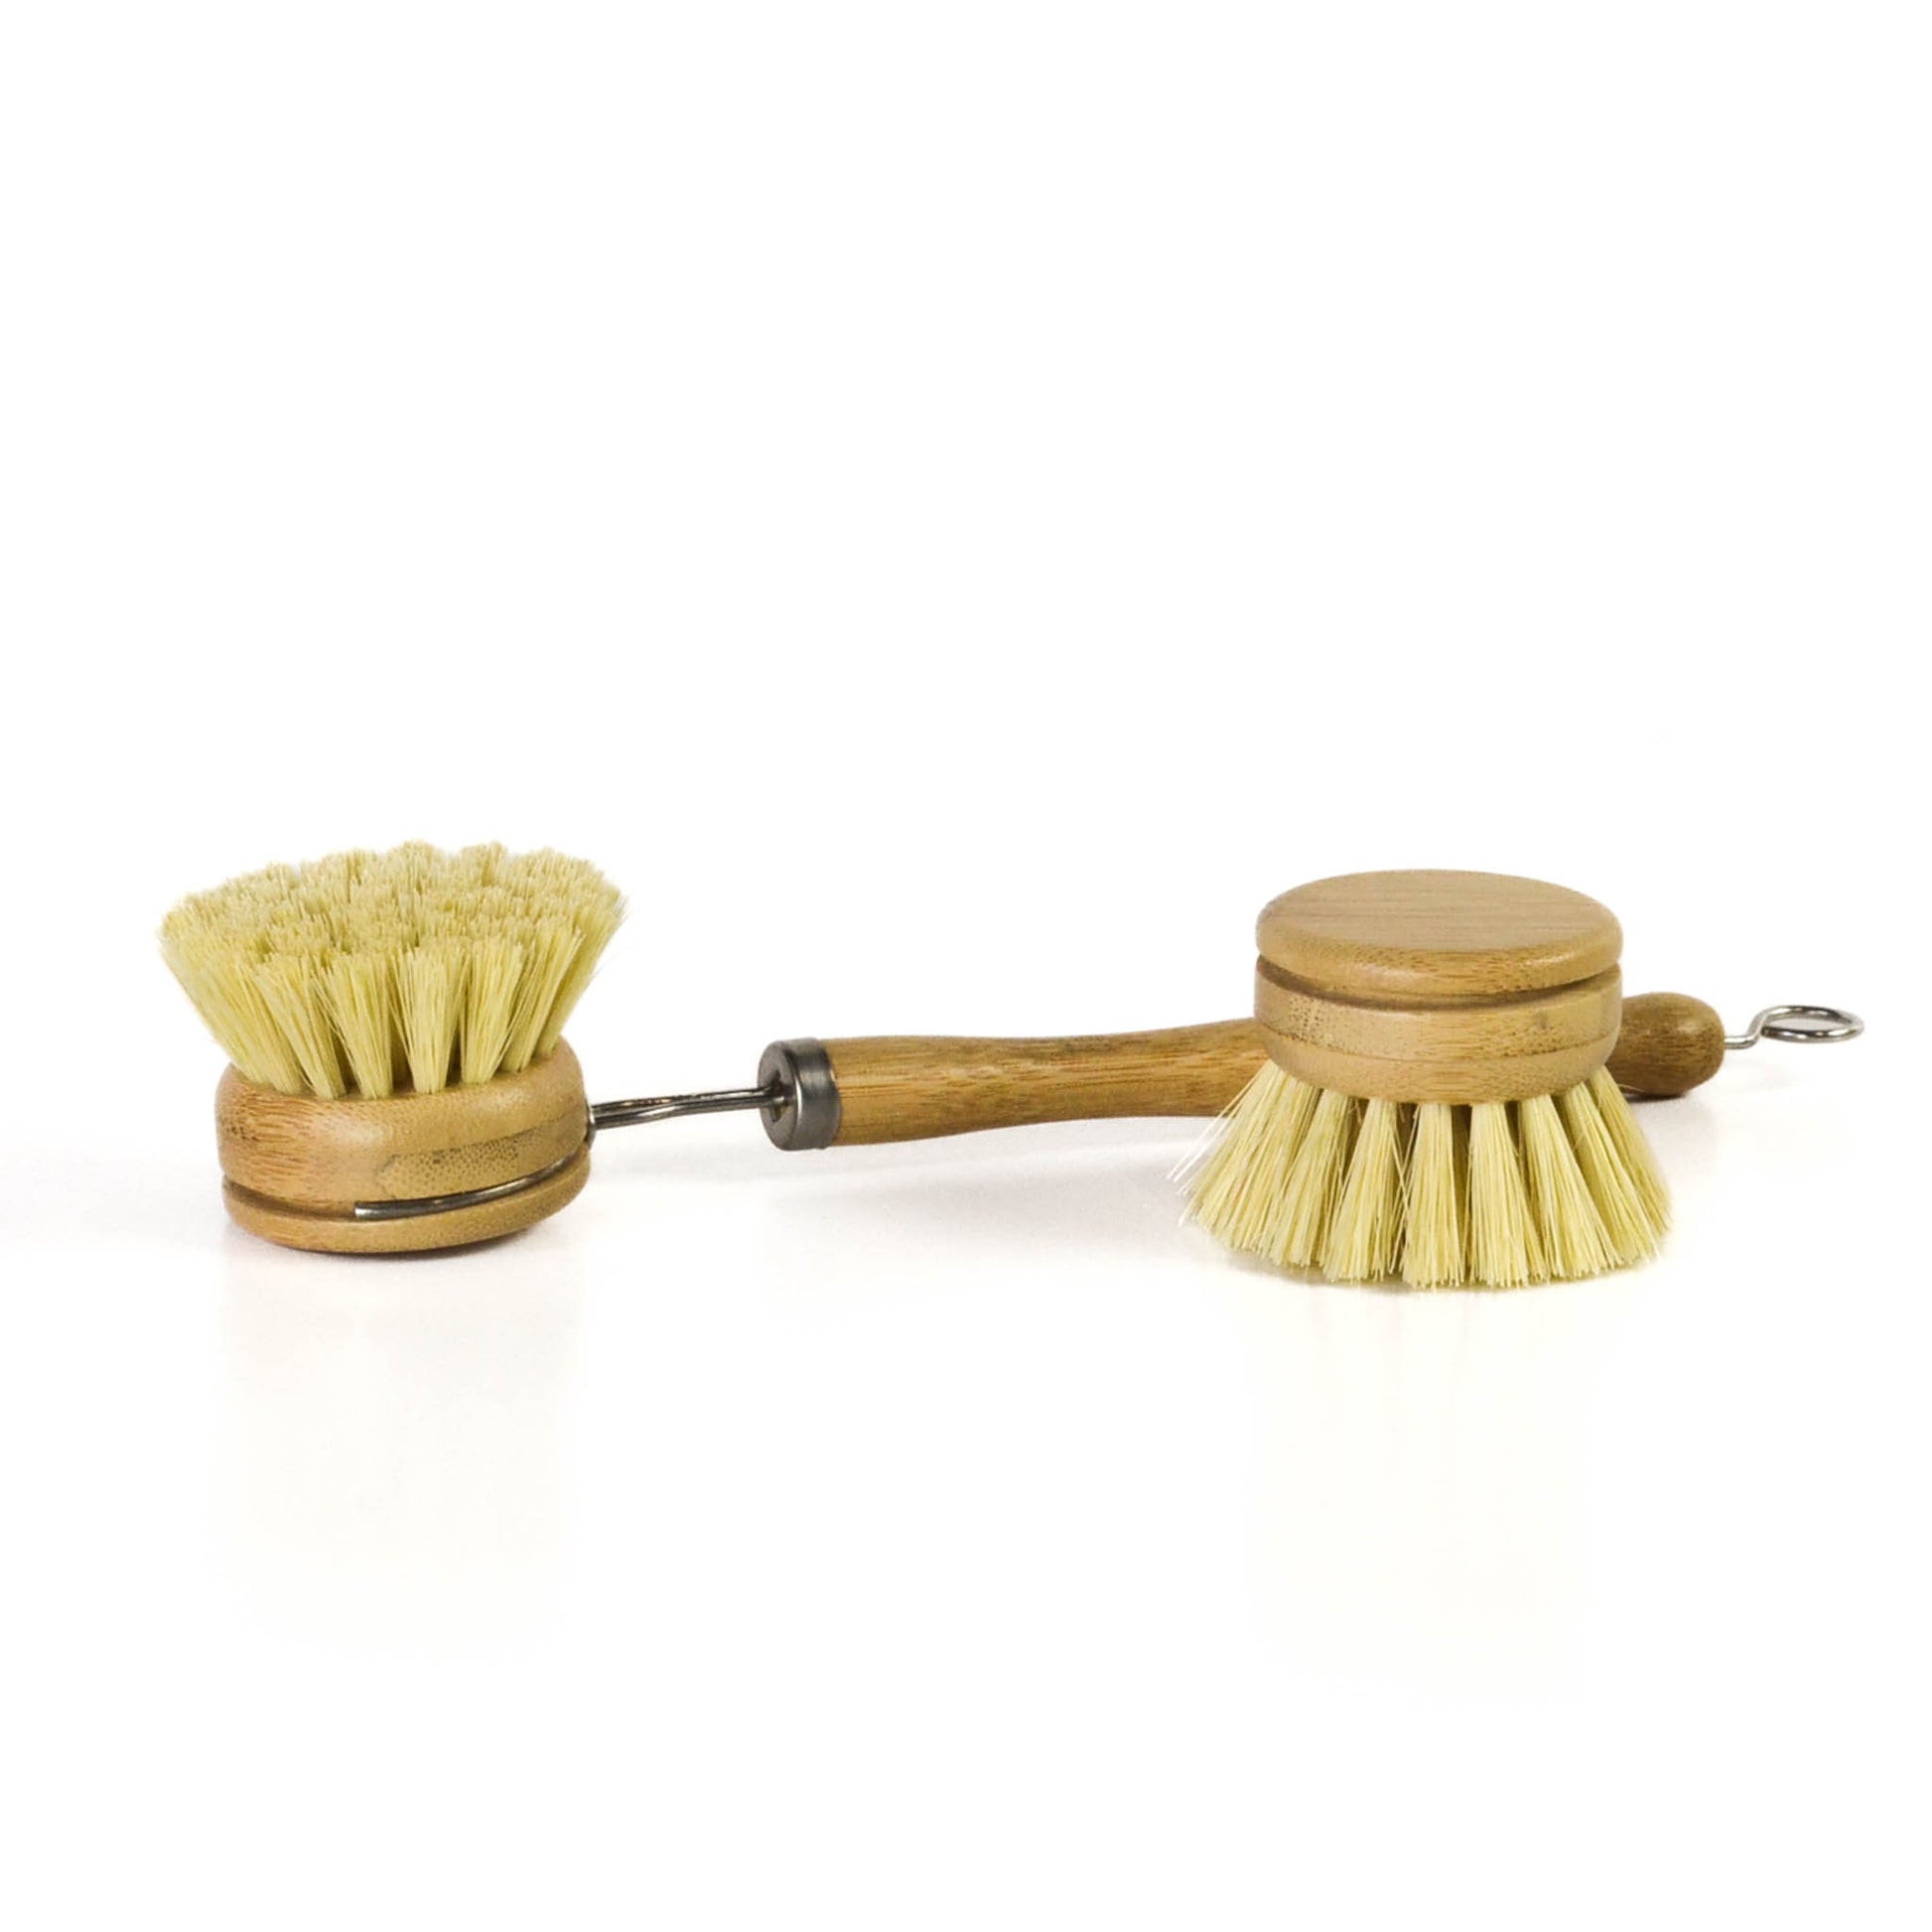 HOMCDALY Bamboo Dish Brush with Holder, Ceramic Dish Brush Holder, Kitchen  Brushes for Dishes, Dish Scrub Brush, Kitchen Dish Brush and Holder